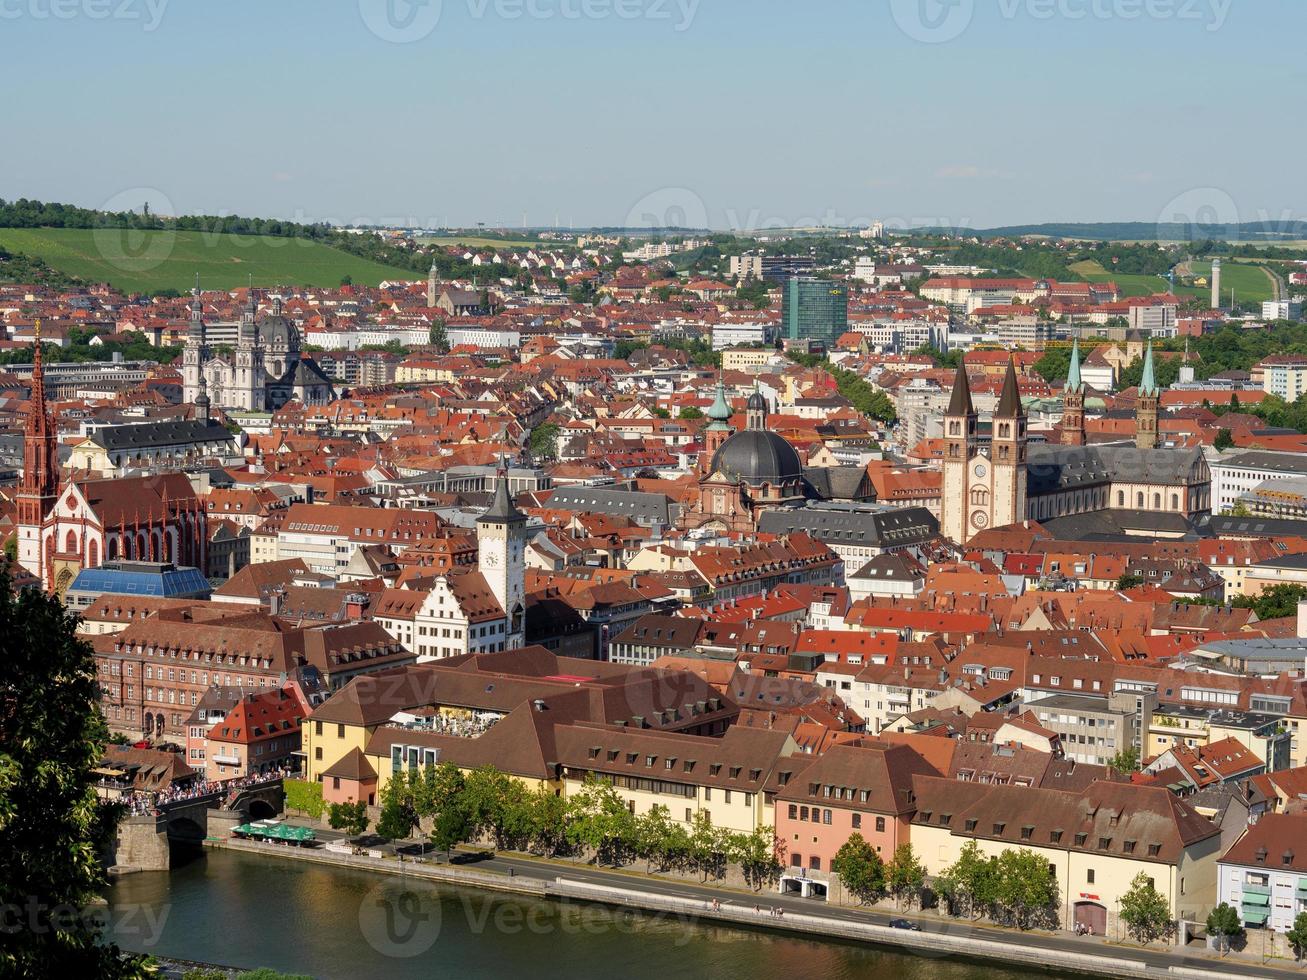 de stad würzburg aan de rivier de Main foto